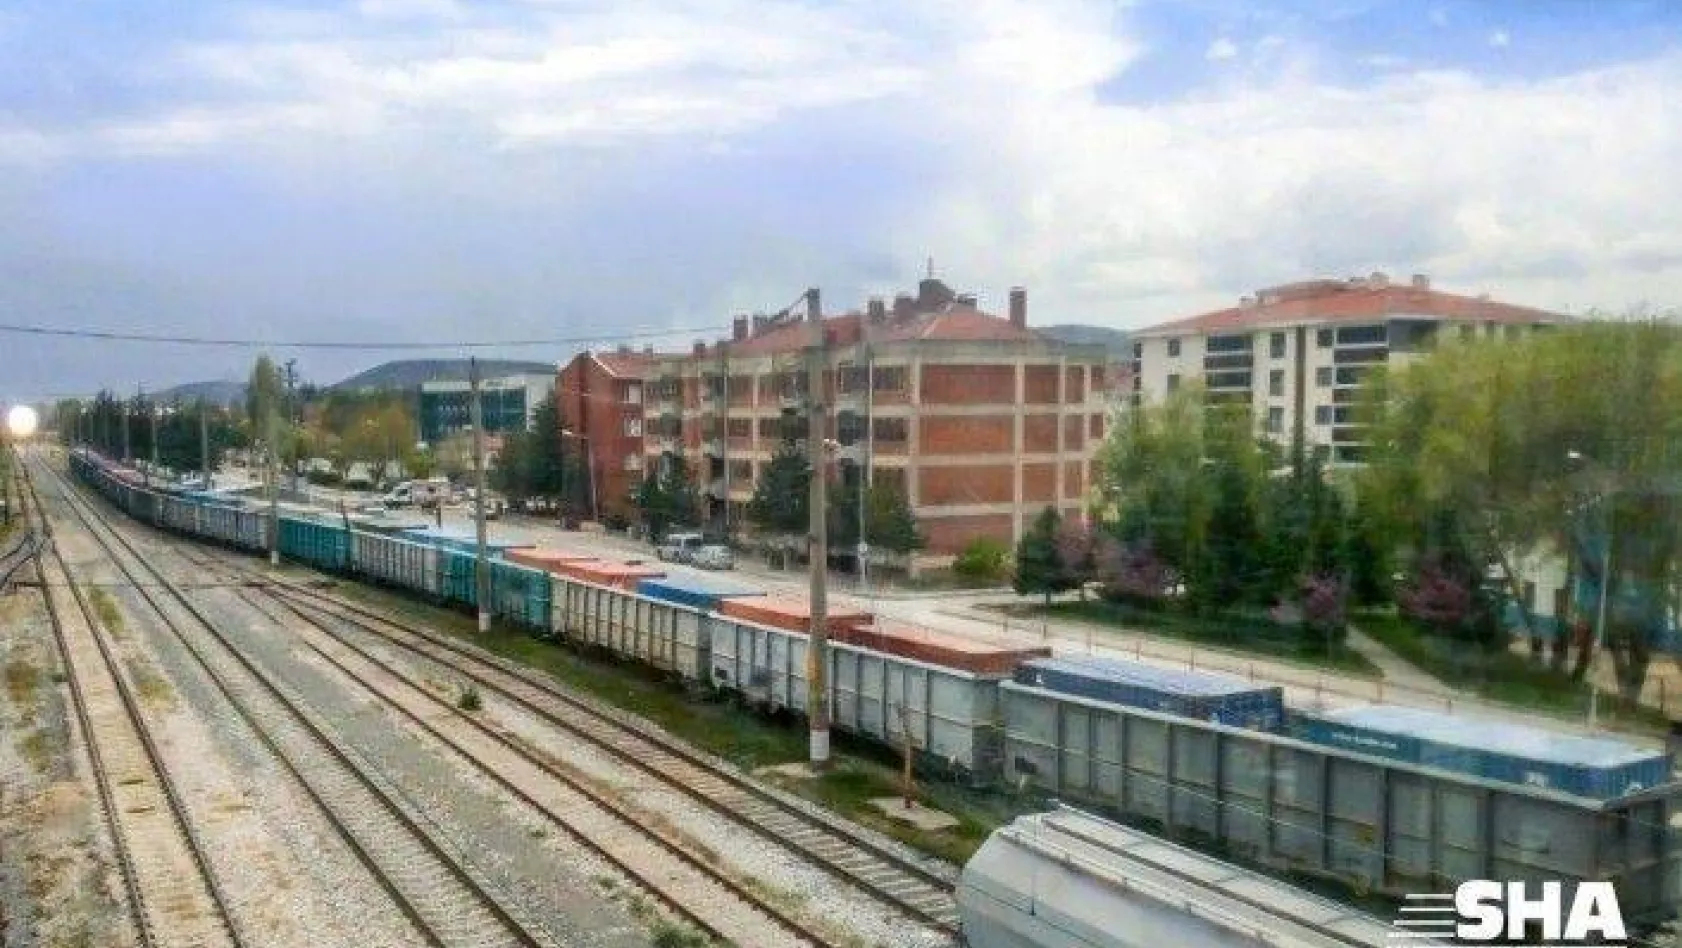 Türkiye'nin tek seferde en uzağa giden en uzun ihracat treni yolda